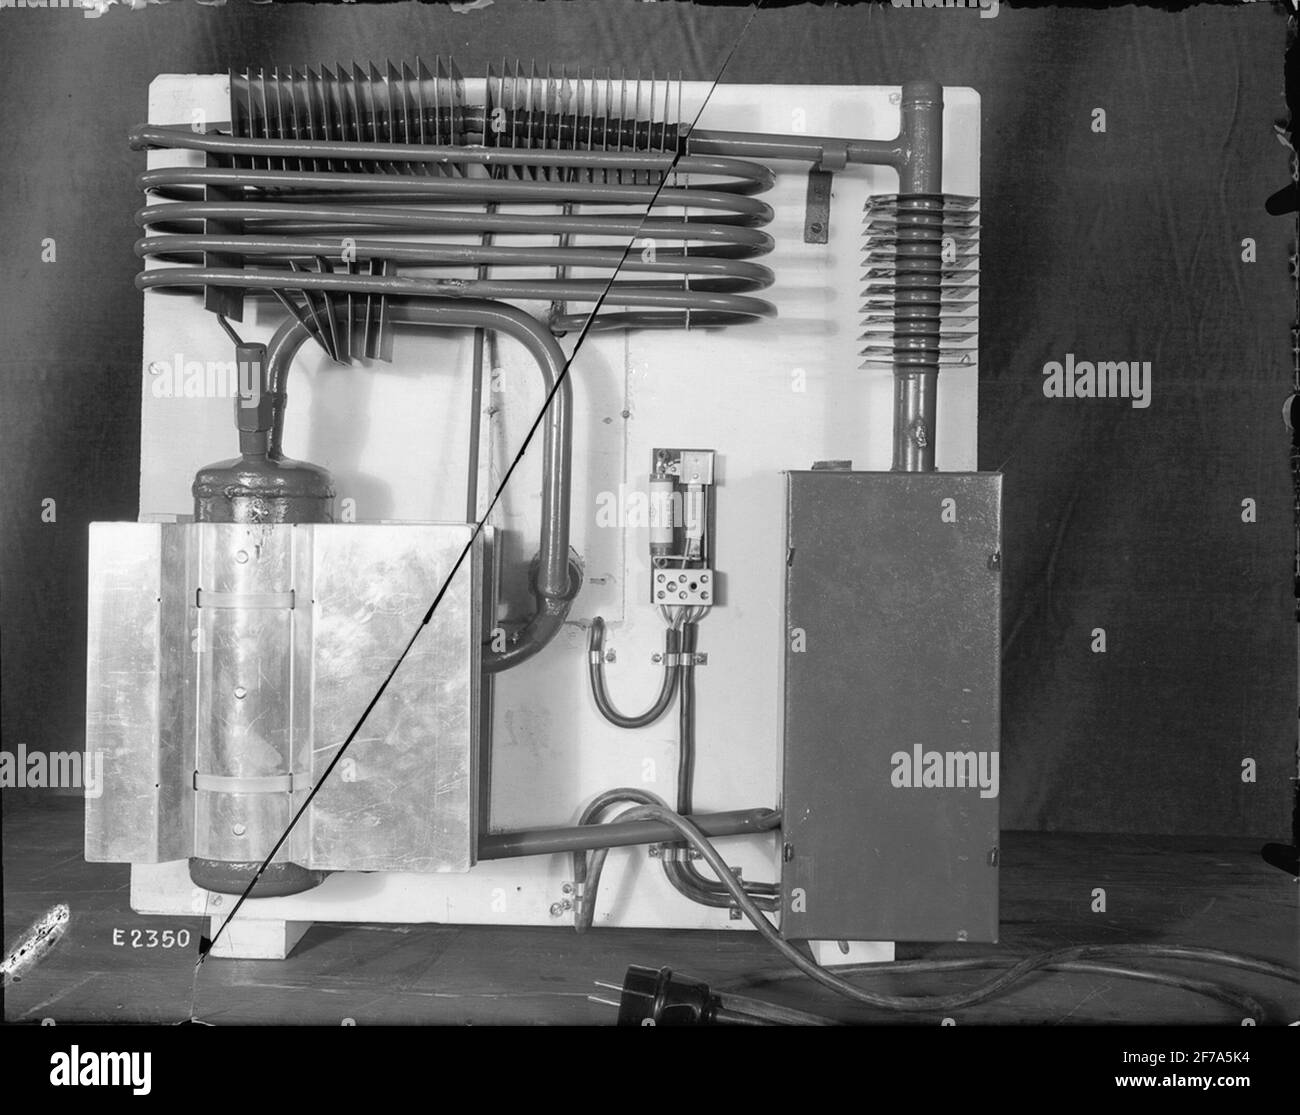 Frigorifero 'economico' dalla Svizzera, gabinetto da dietro con apparecchio  Foto stock - Alamy